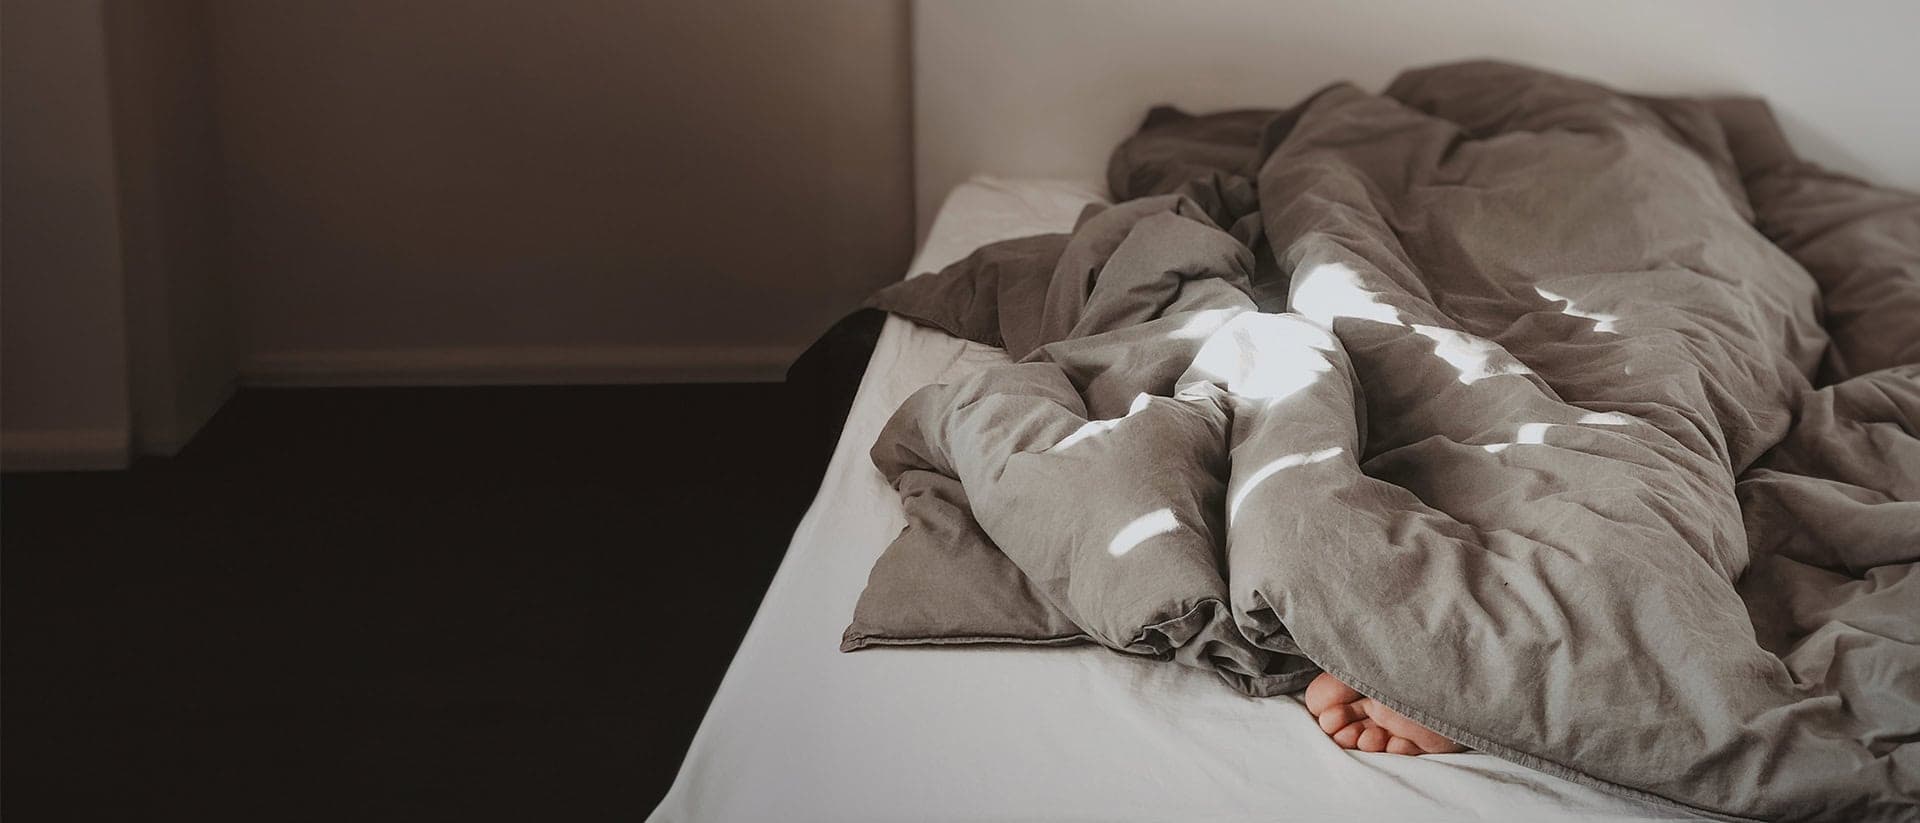 Foto på en säng där man ser en fot stick ut under täcket.